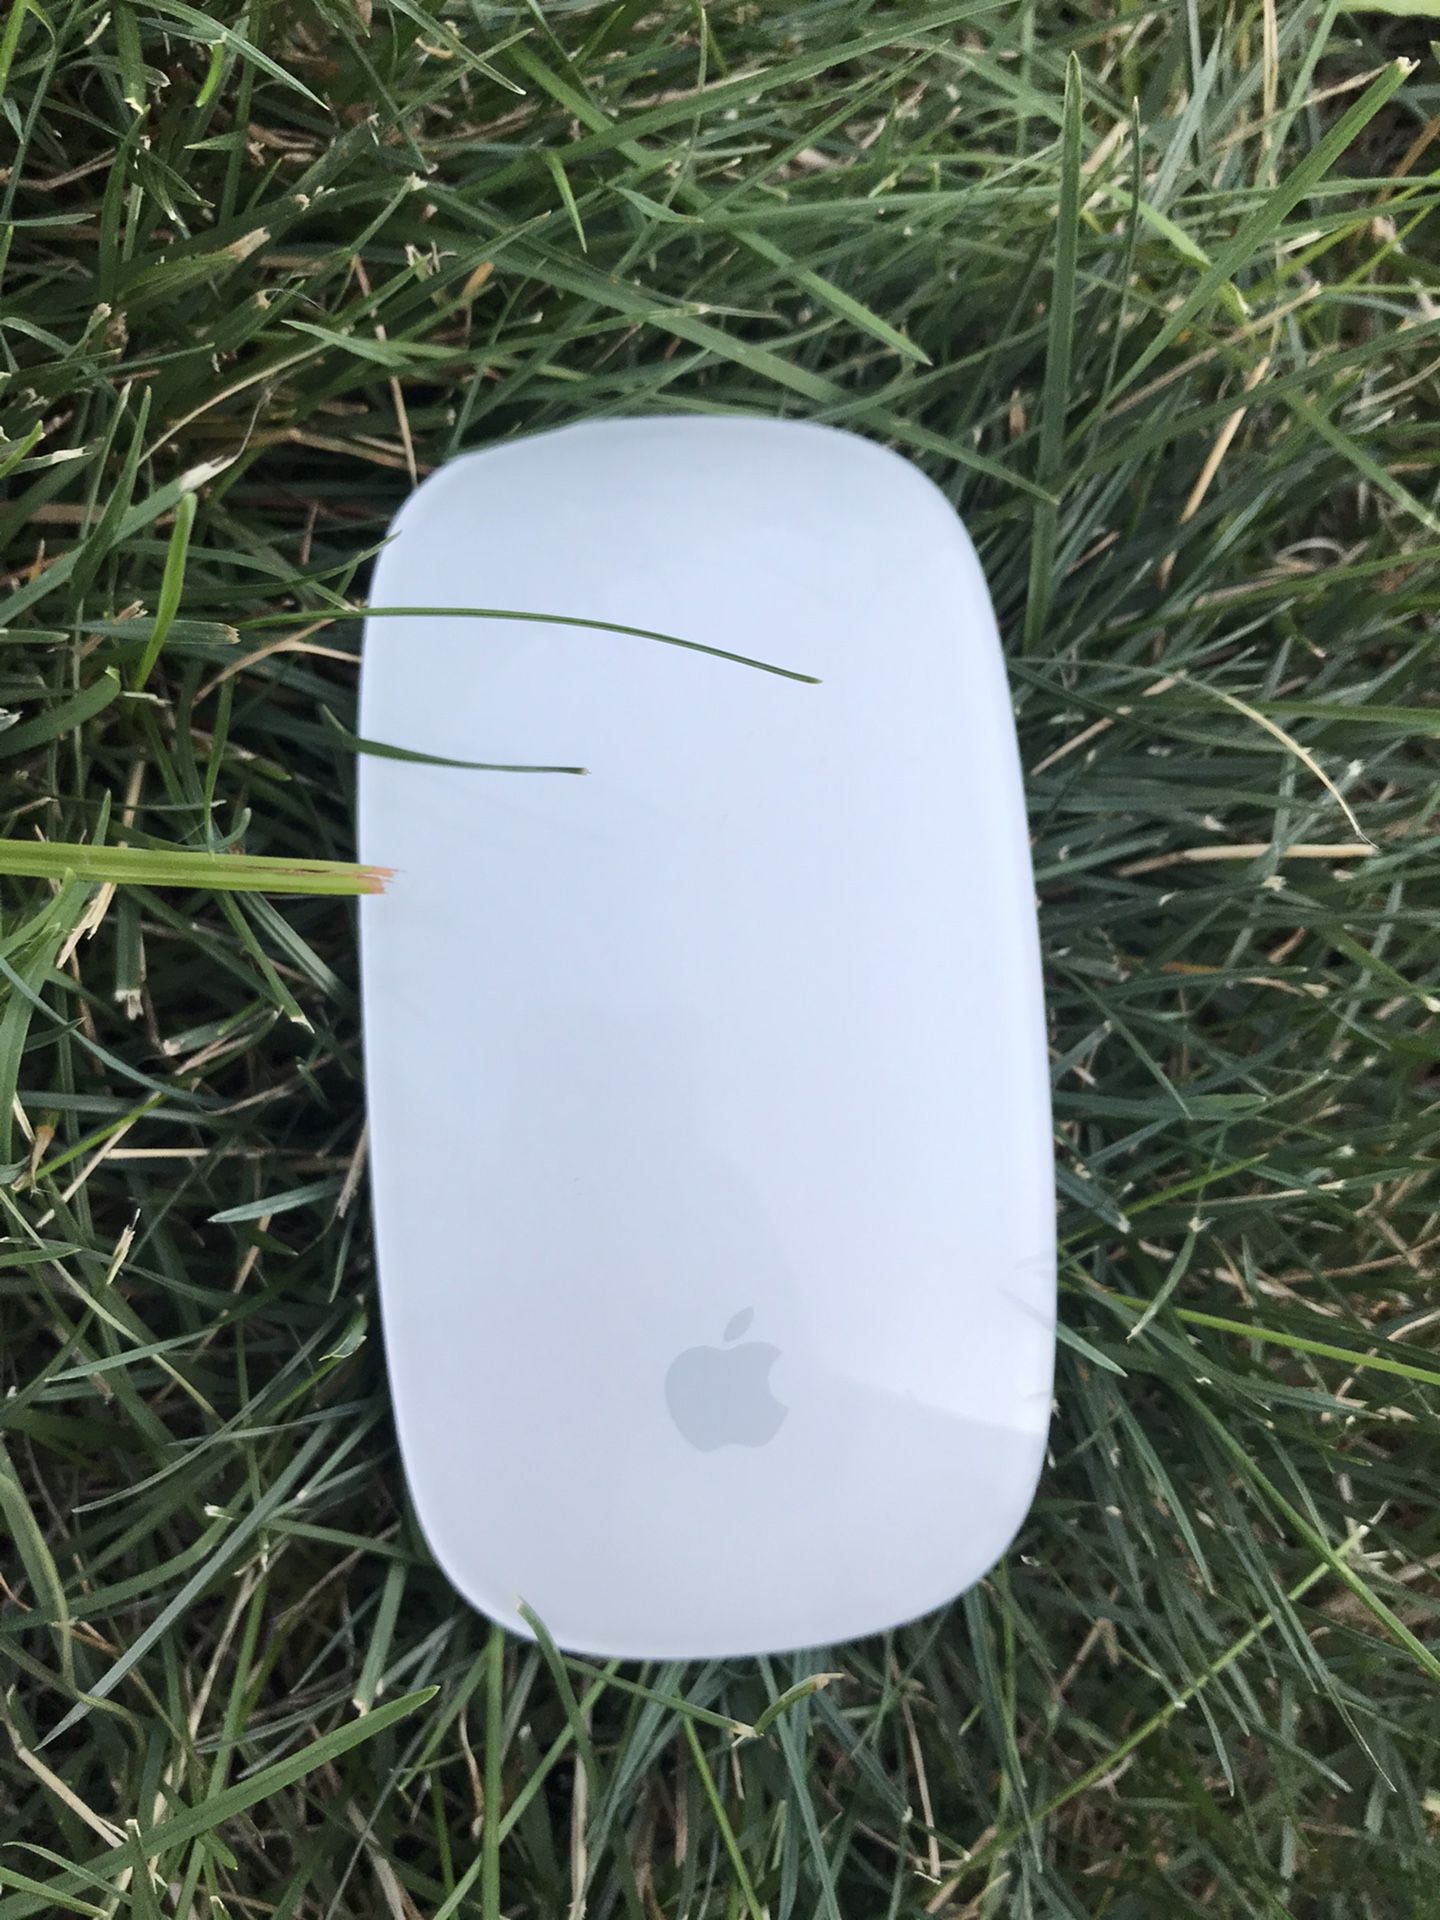 Apple Bluetooth Magic Mouse